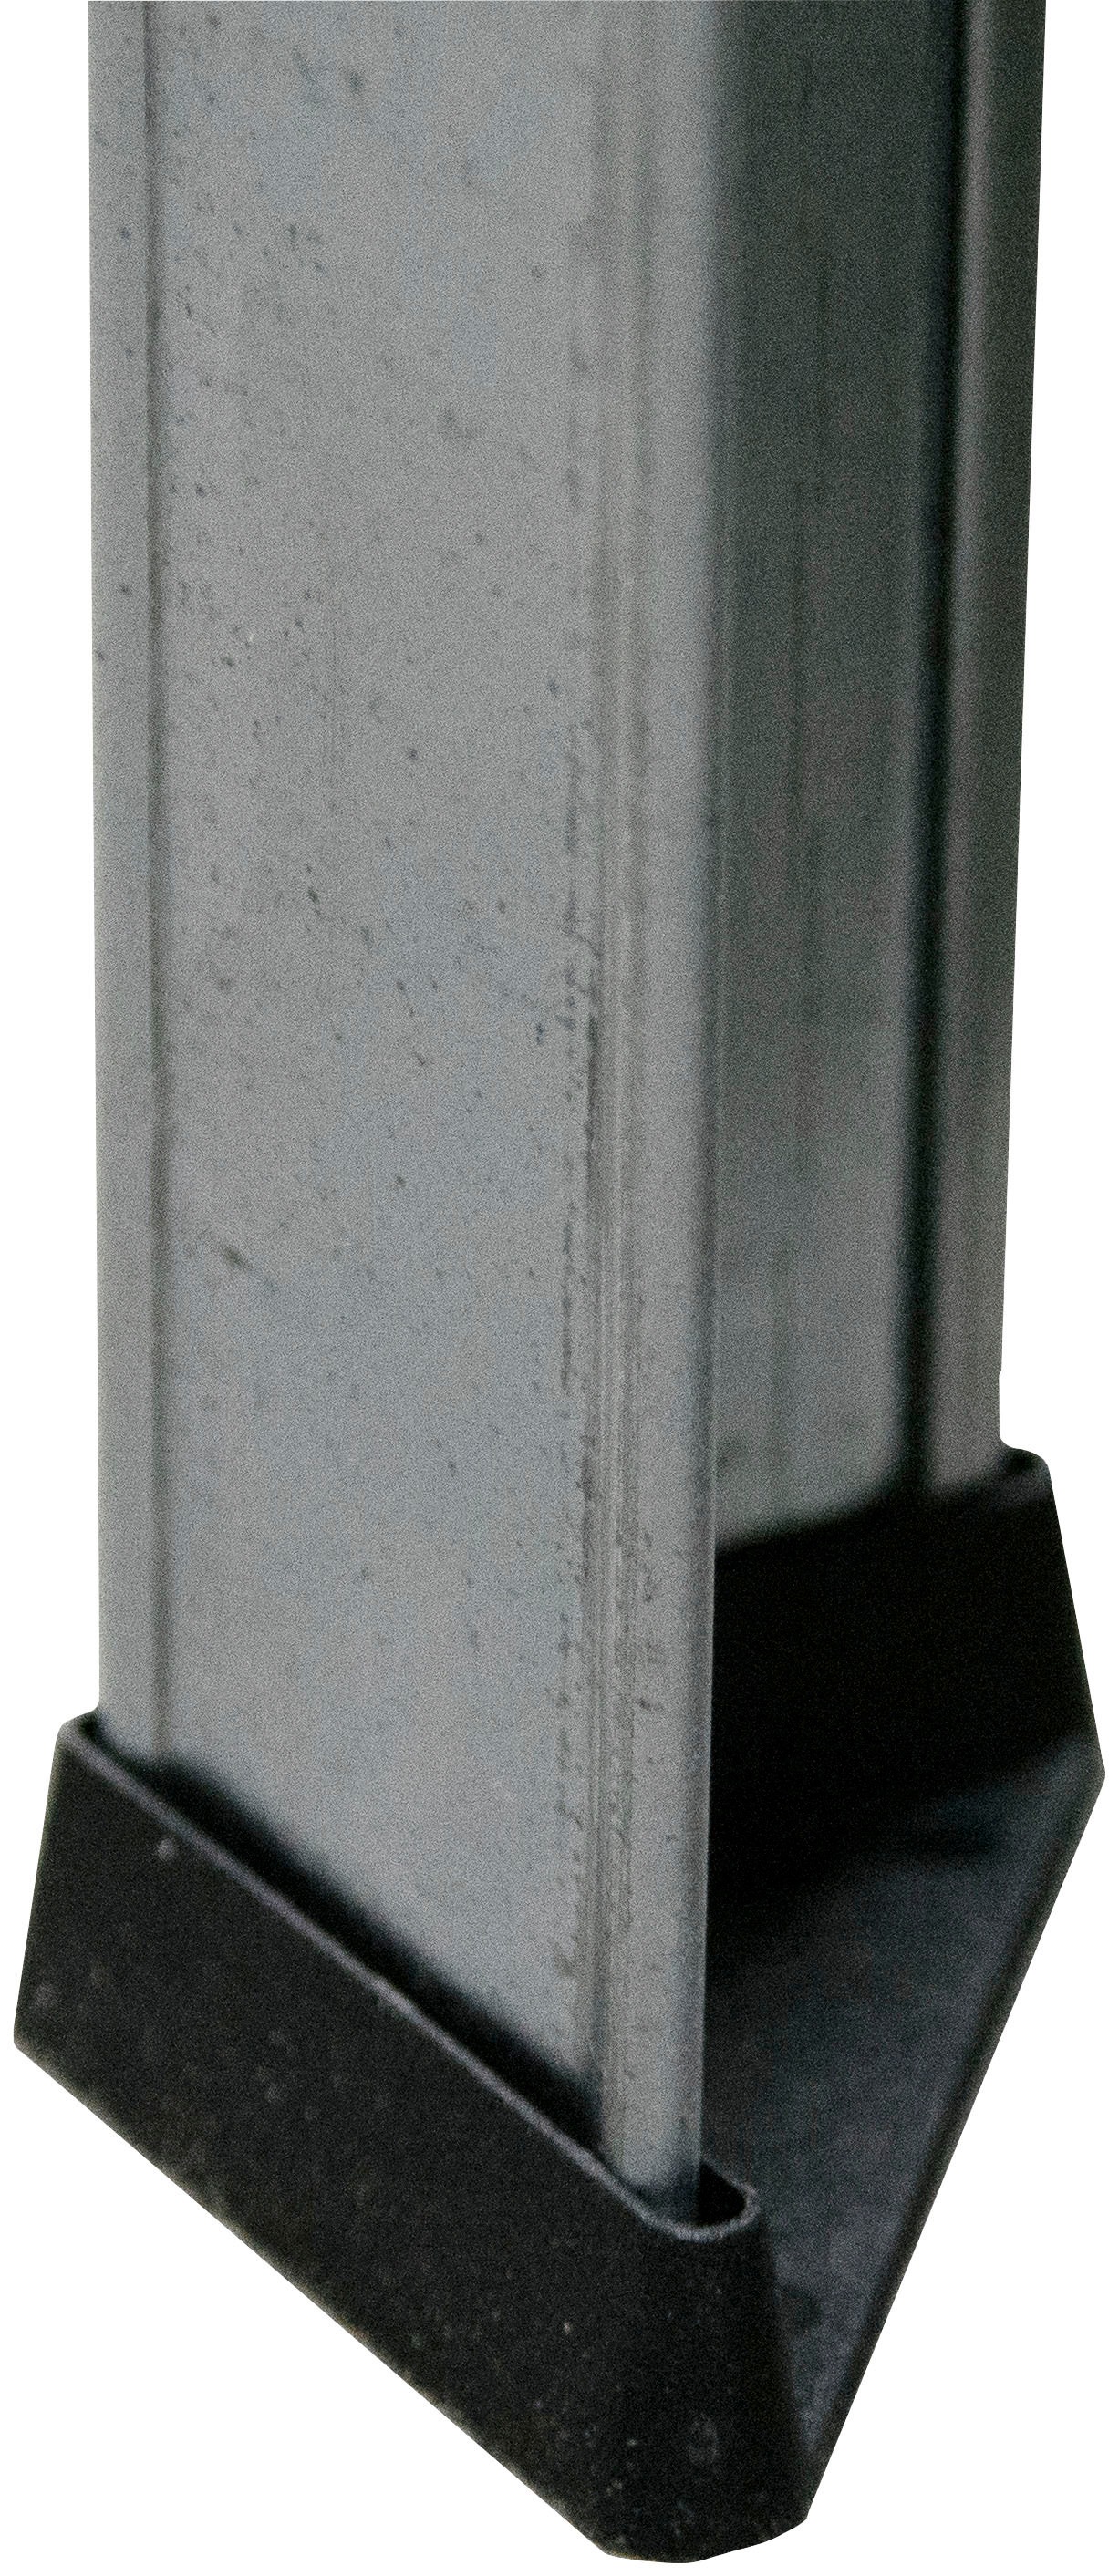 SCHULTE Regalwelt Schwerlastregal »Stecksystem-Schwerlastregal S- XL«, 5 Böden, Höhe: 180cm, in verschiedenen Ausführungen erhältlich